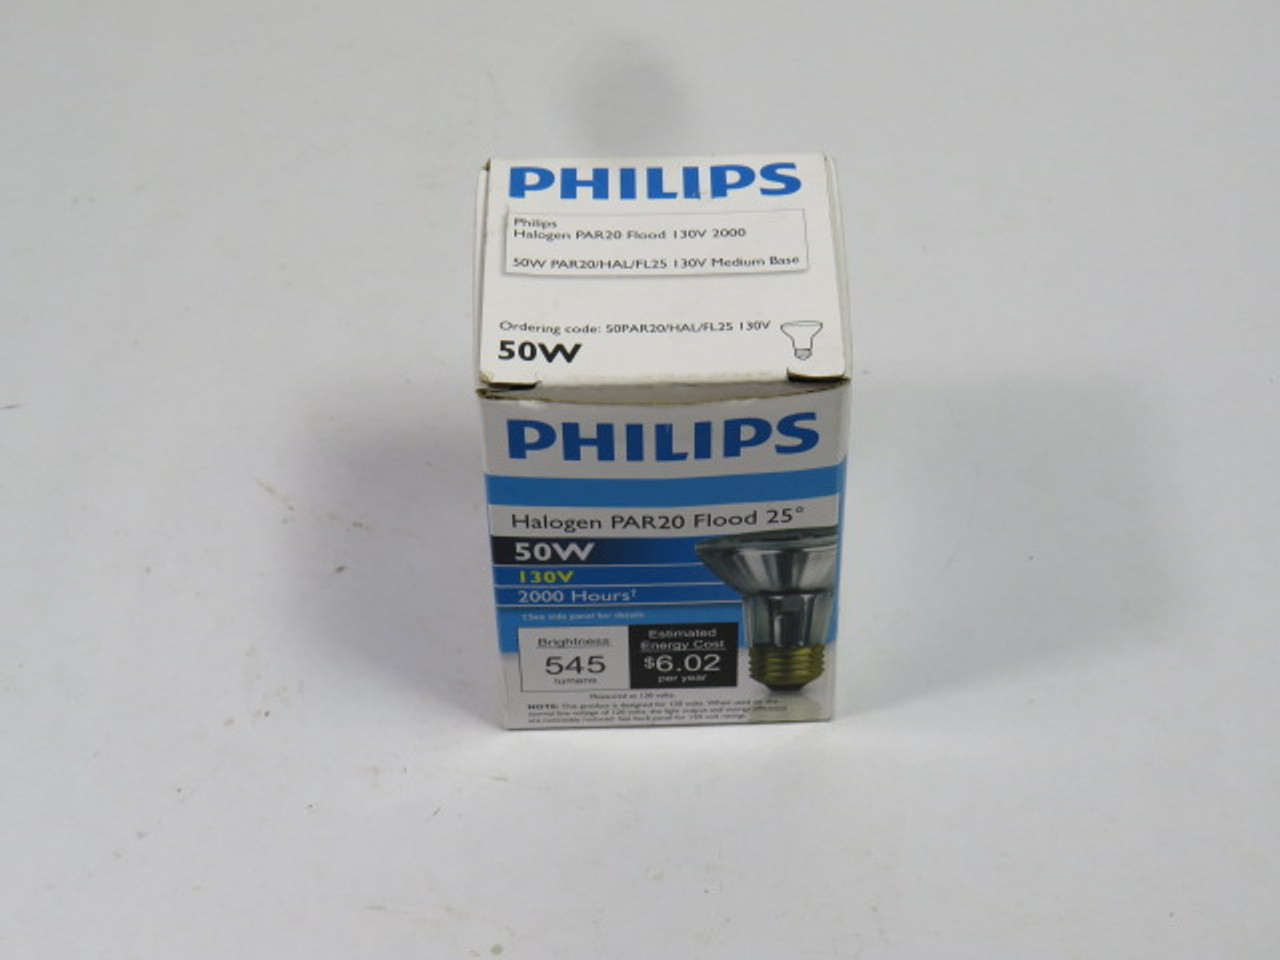 Philips 50W/PAR20/HAL/FL25-130V Halogen Reflector Lamp 50W 130V ! NEW !